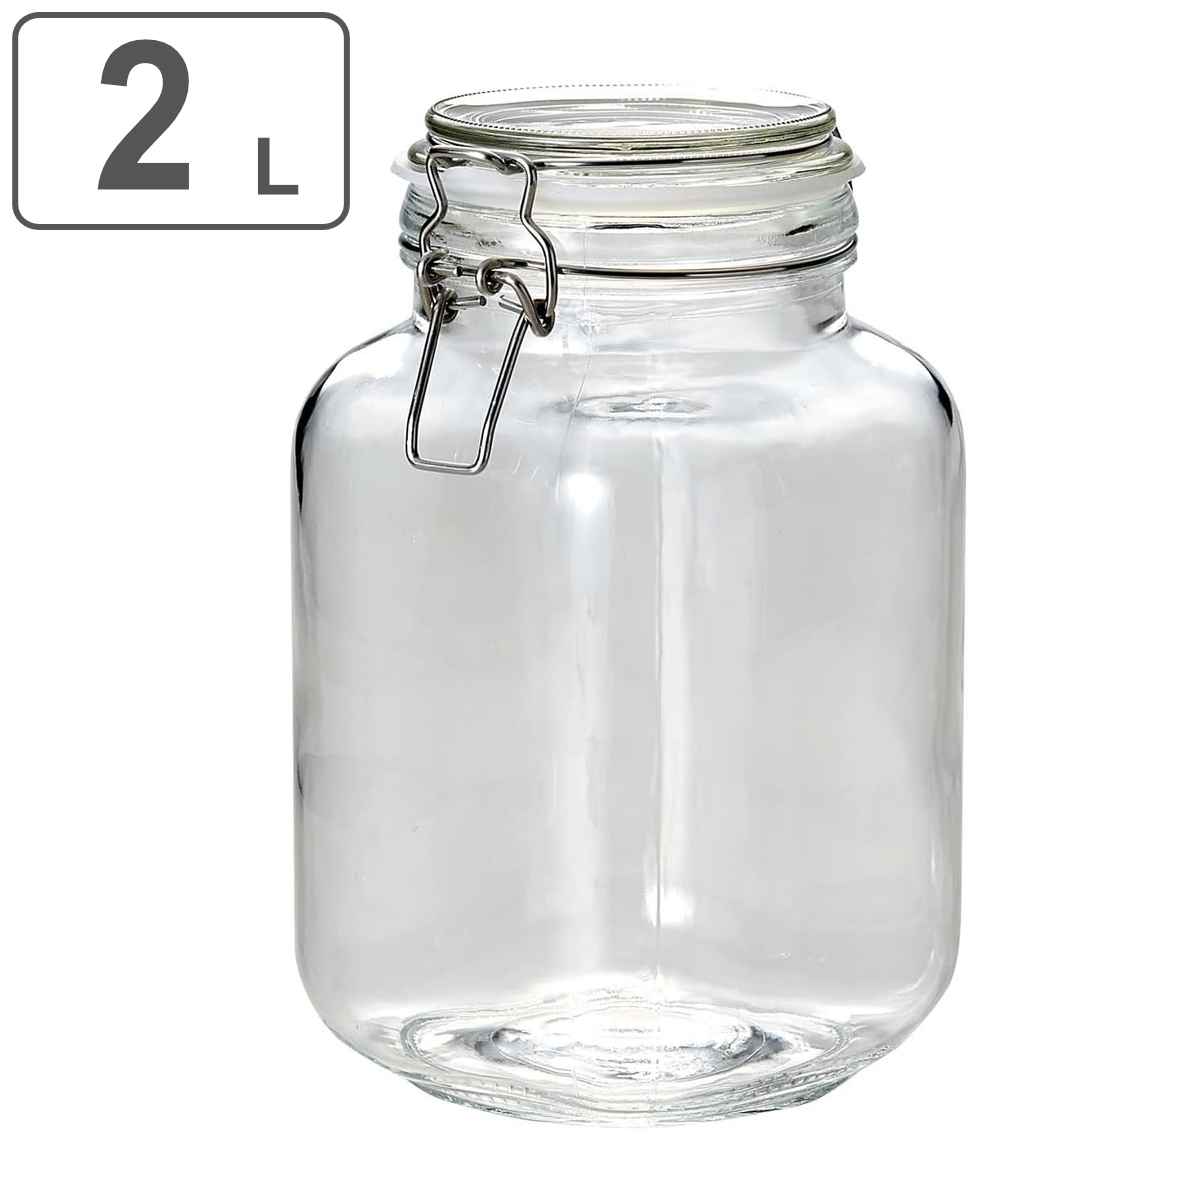 保存容器 2L ガラス製 角型保存ビン 